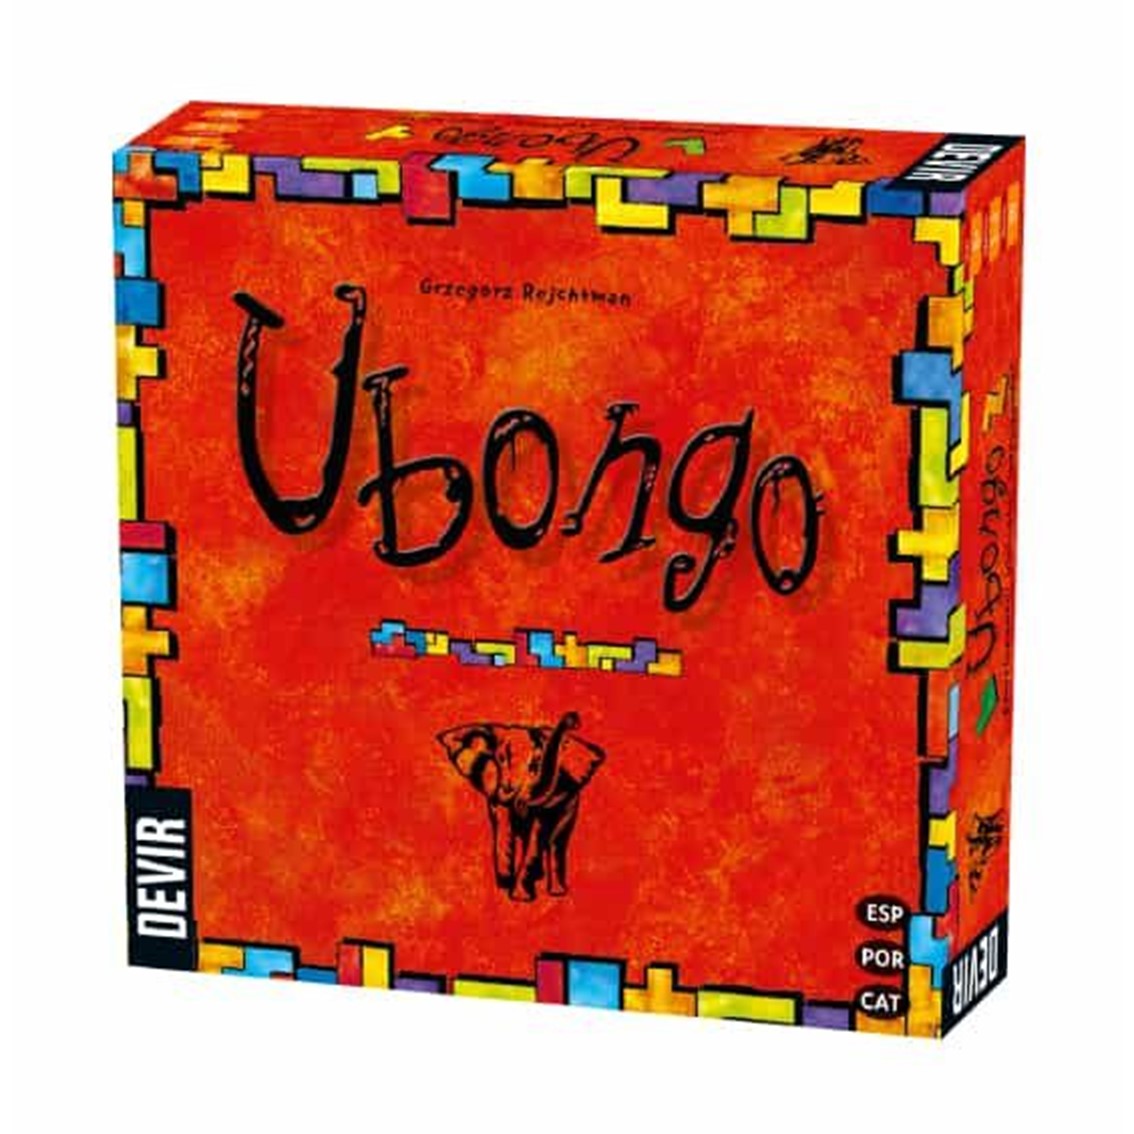 Jeu de société Ubongo Version Trilingue - Thème Abstrait - De 2 à 4 joueurs - A partir de 8 ans - Durée 20-30min. environ.